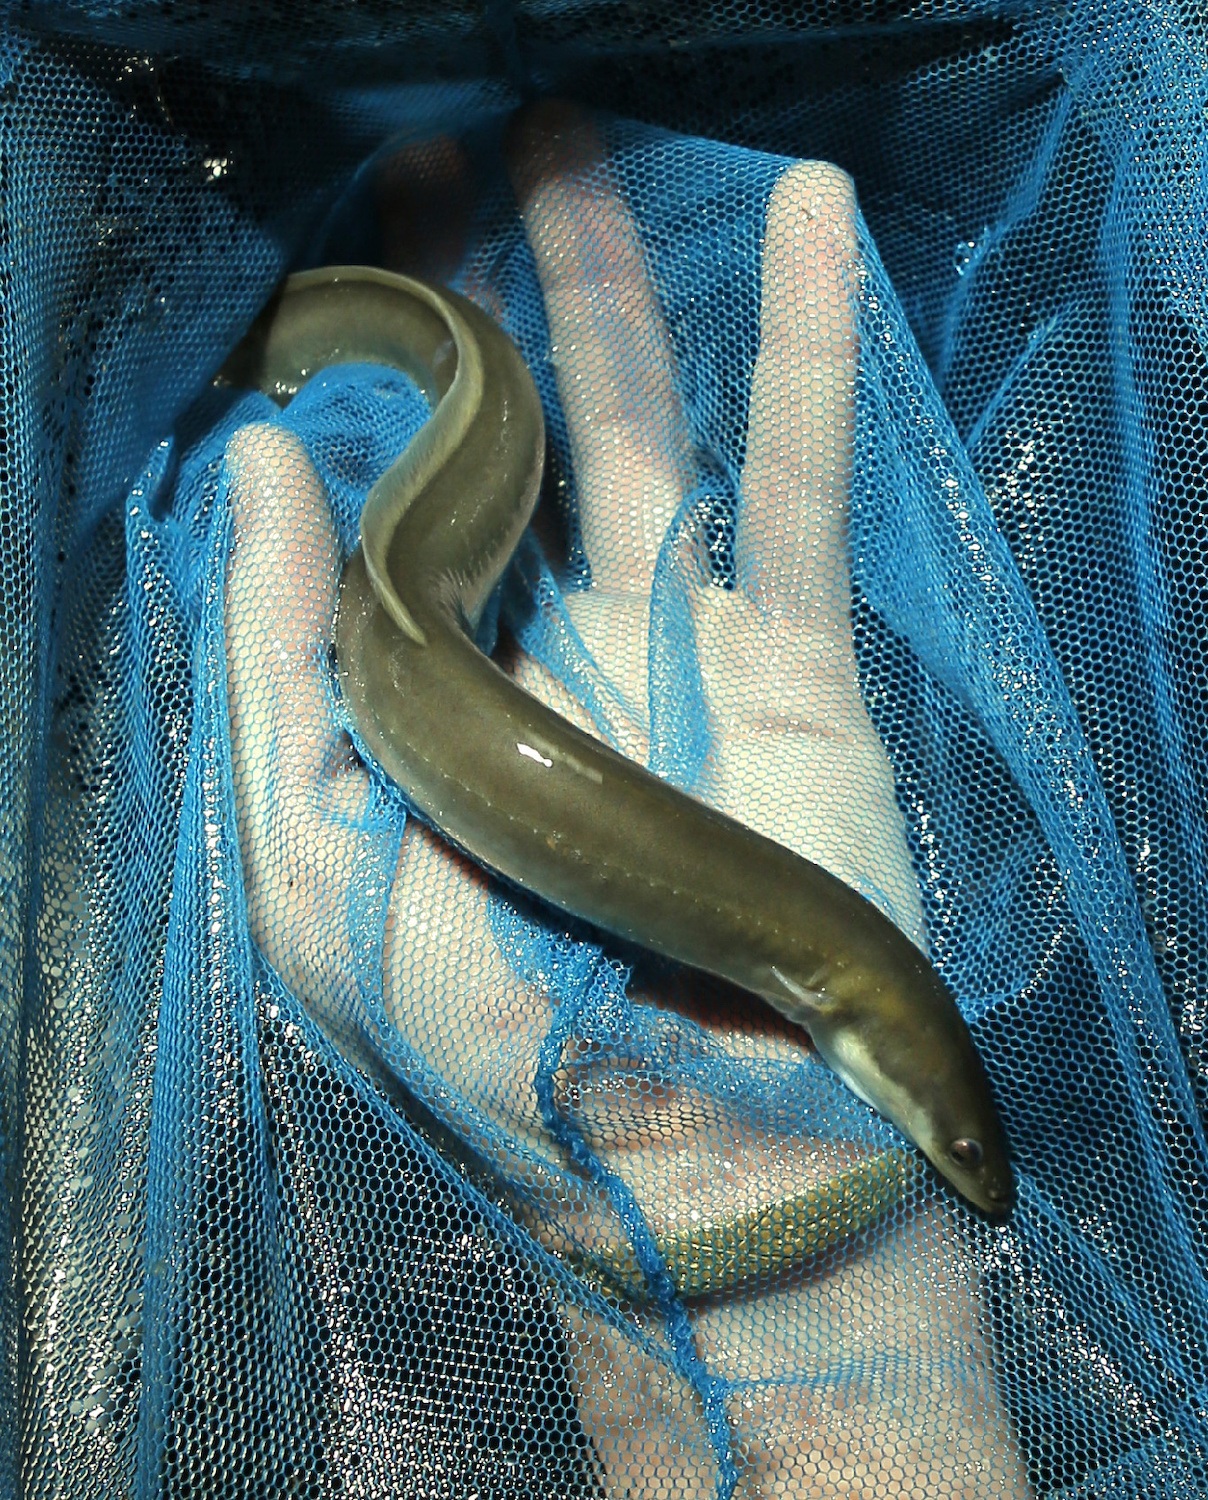 Elver eel held inside a blue net in Walpole, Maine. May 2020